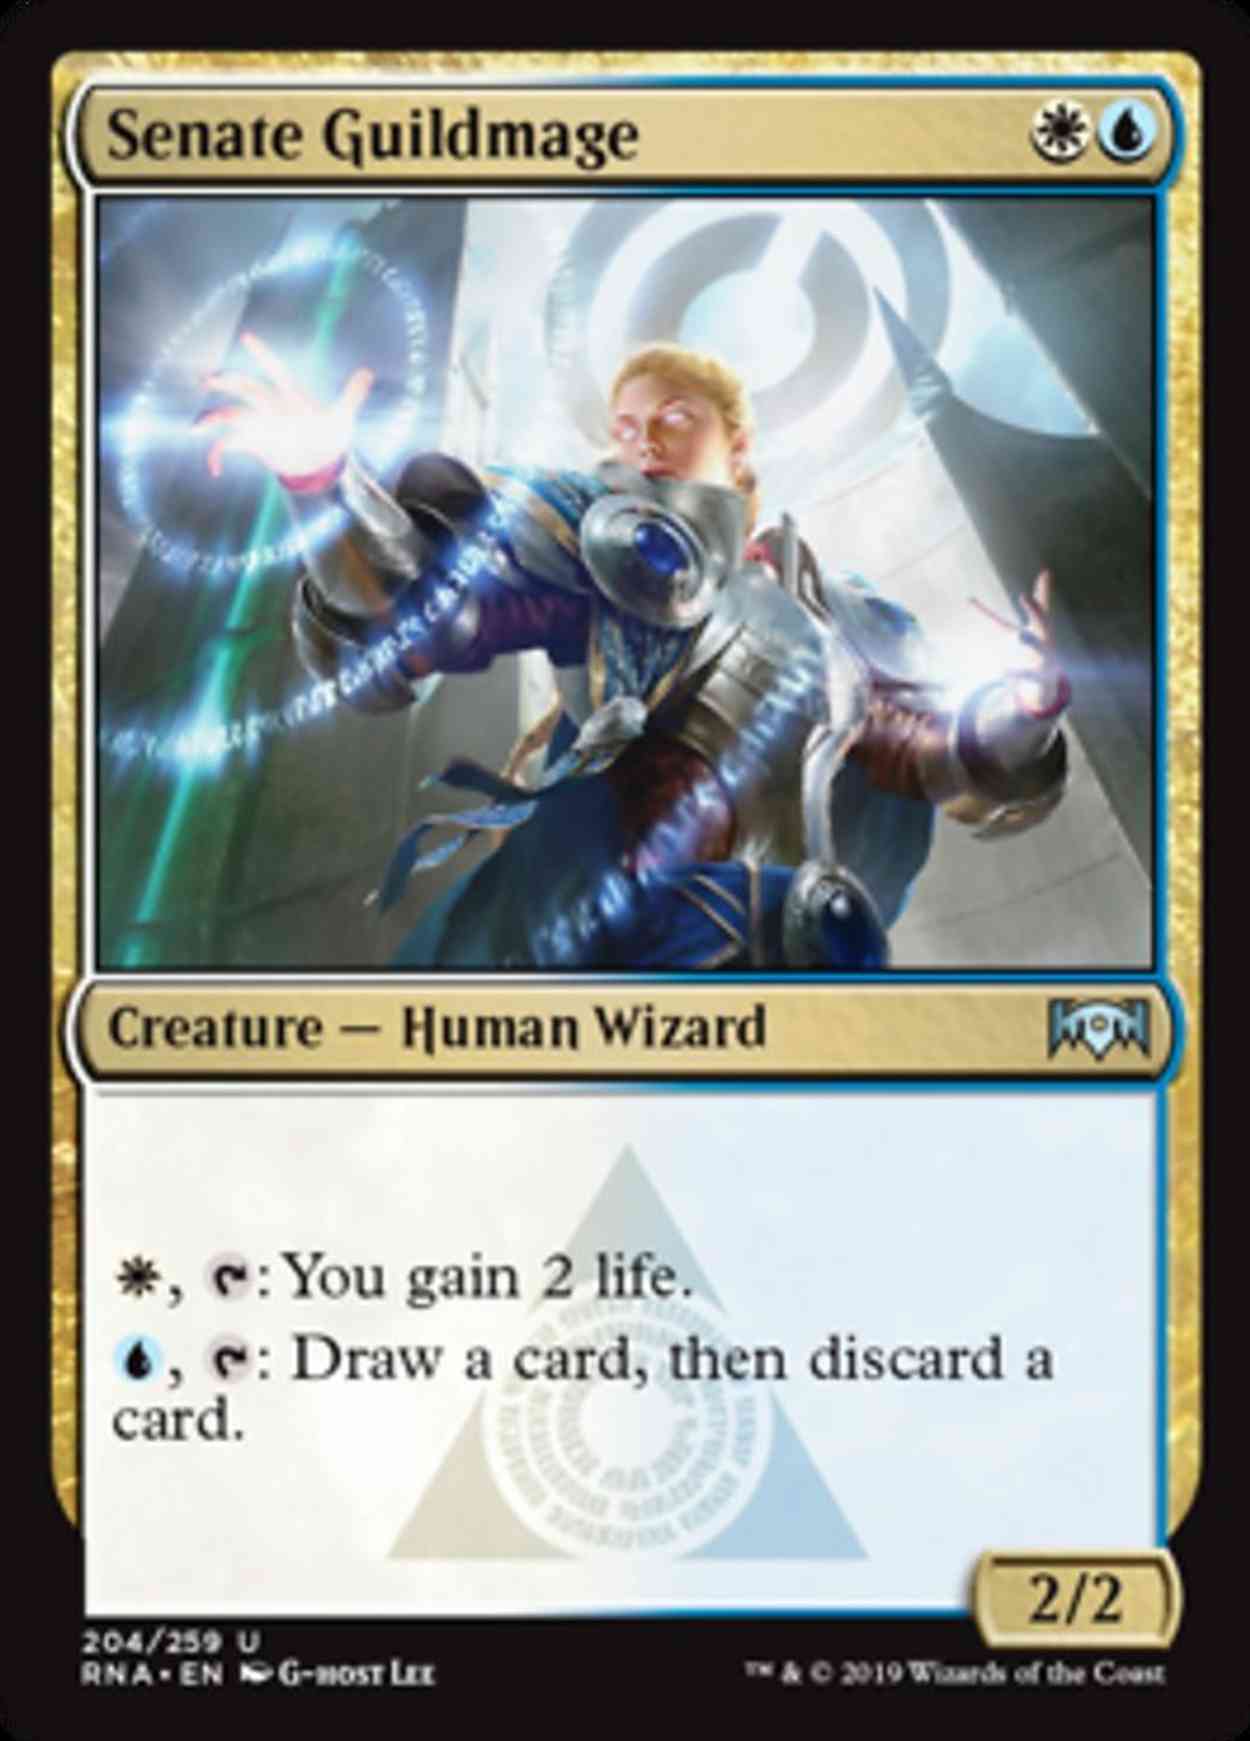 Senate Guildmage magic card front